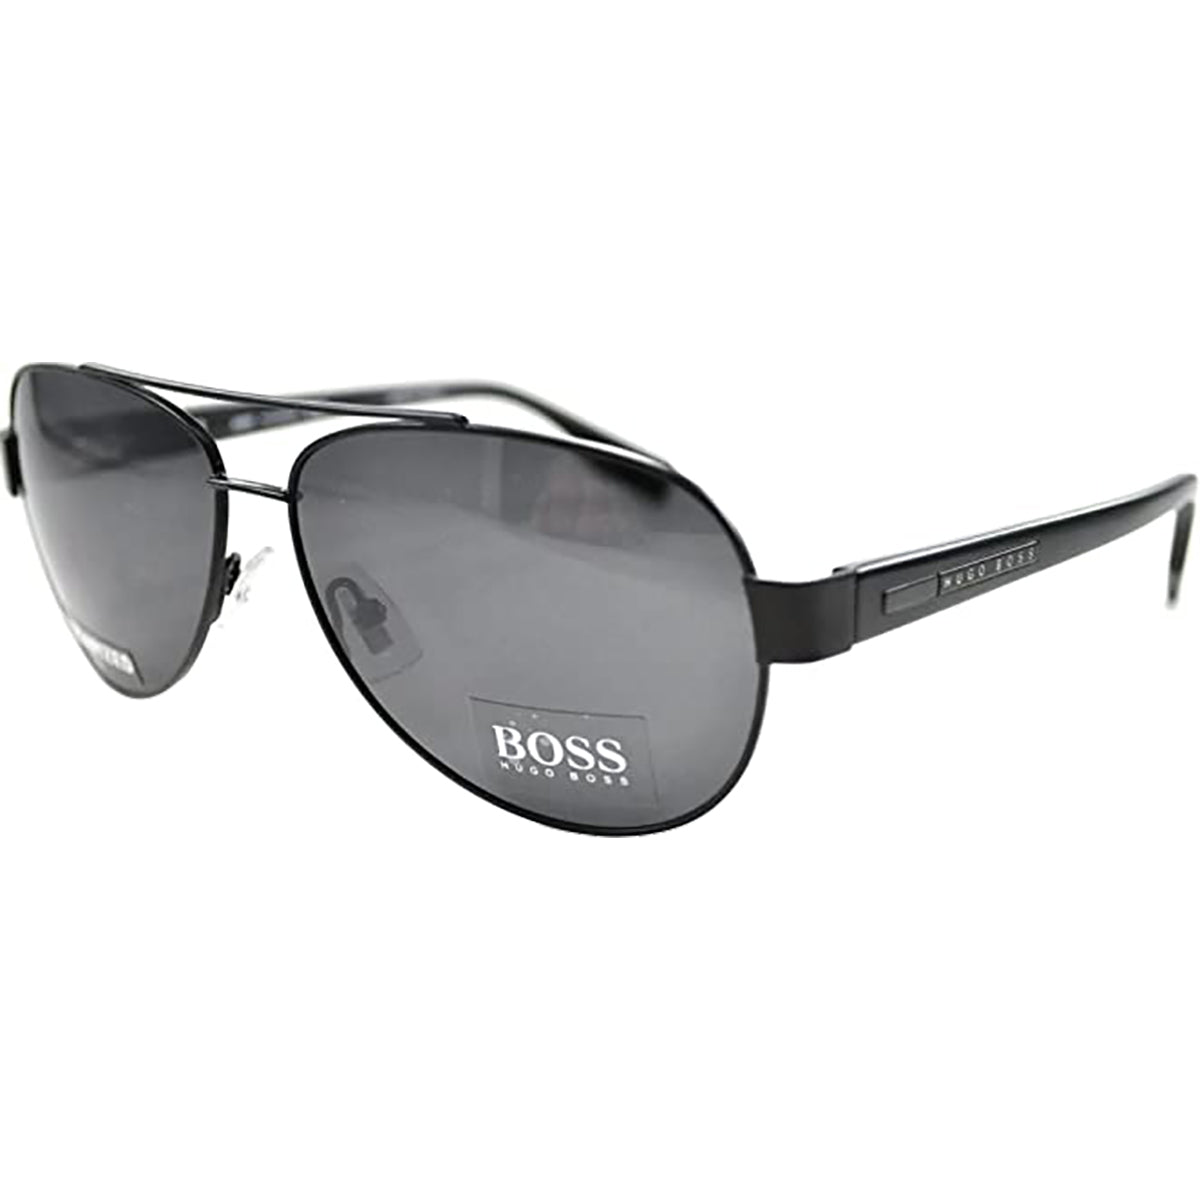 Hugo Boss 0317/S S Men's Aviator Sunglasses-BOSS